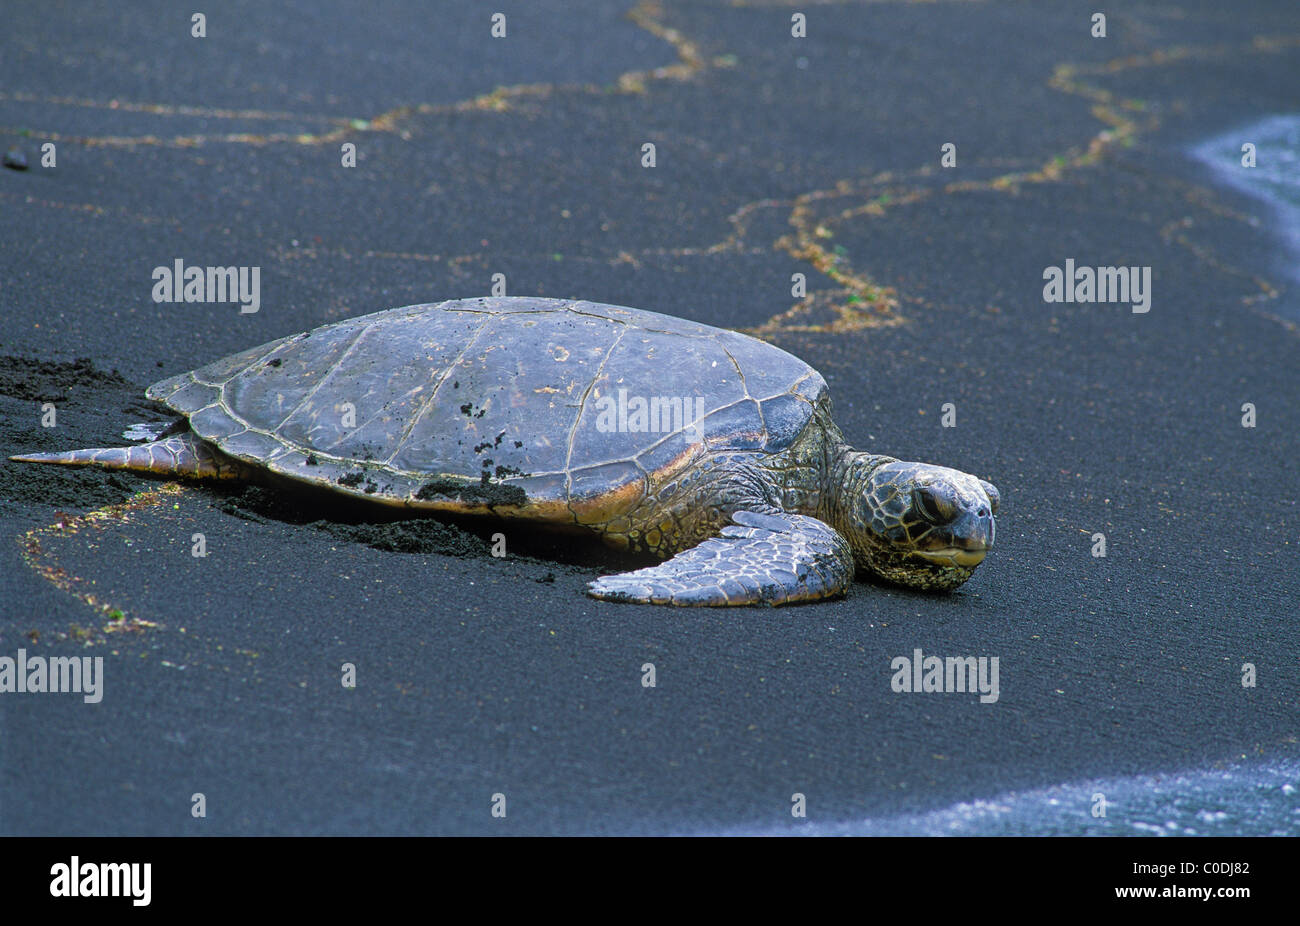 Des tortues de mer vertes ou Honu, sur la plage de sable noir de Punalu'u, Île d'Hawaï. Banque D'Images